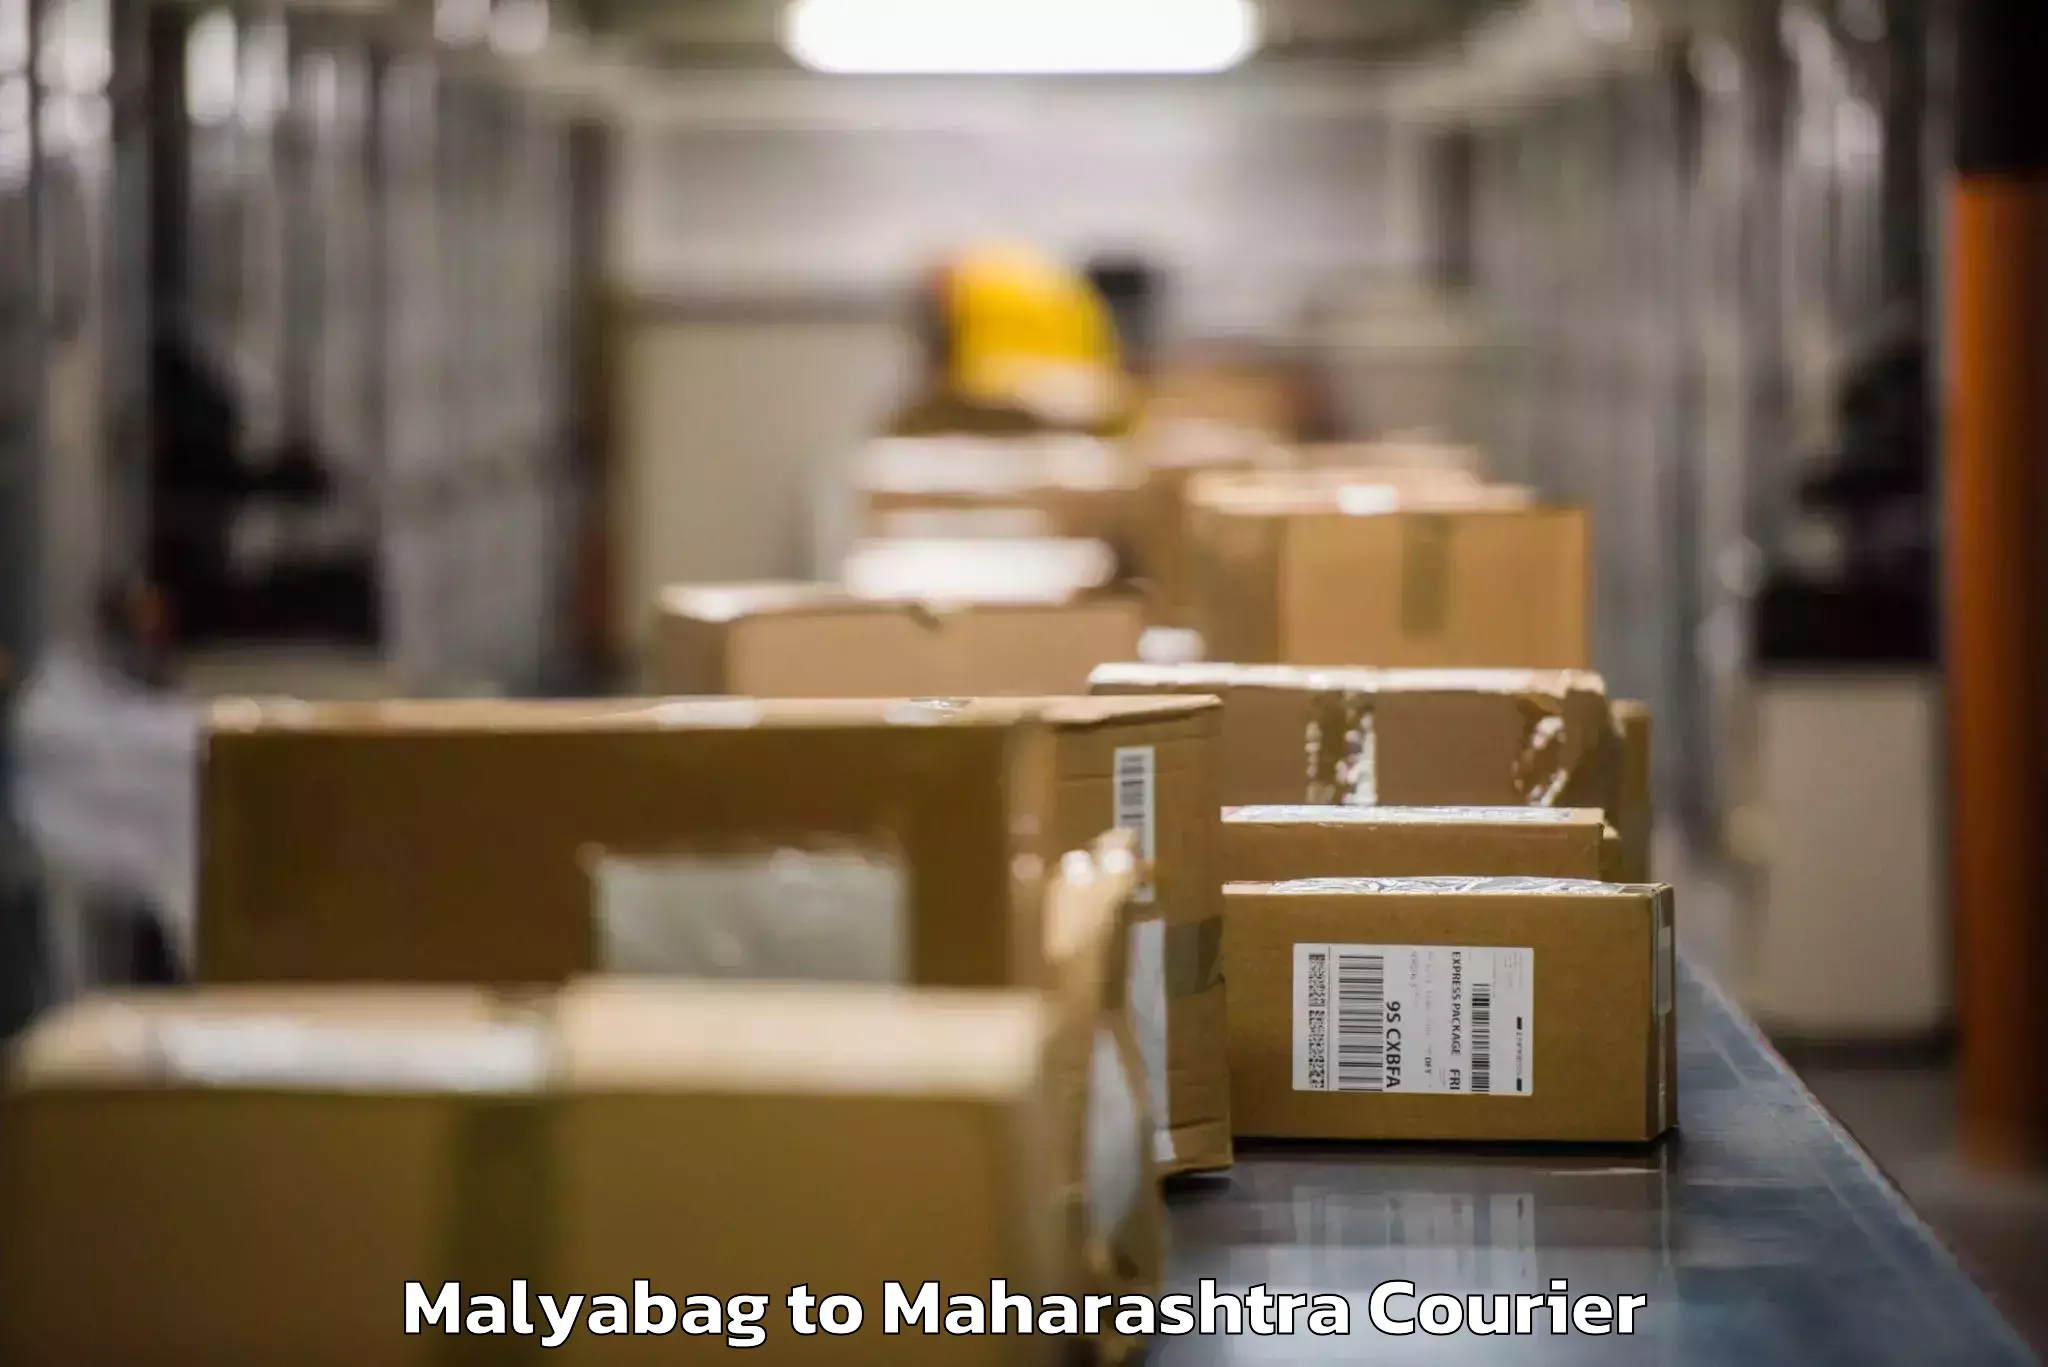 Holiday baggage shipping Malyabag to Mumbai Port